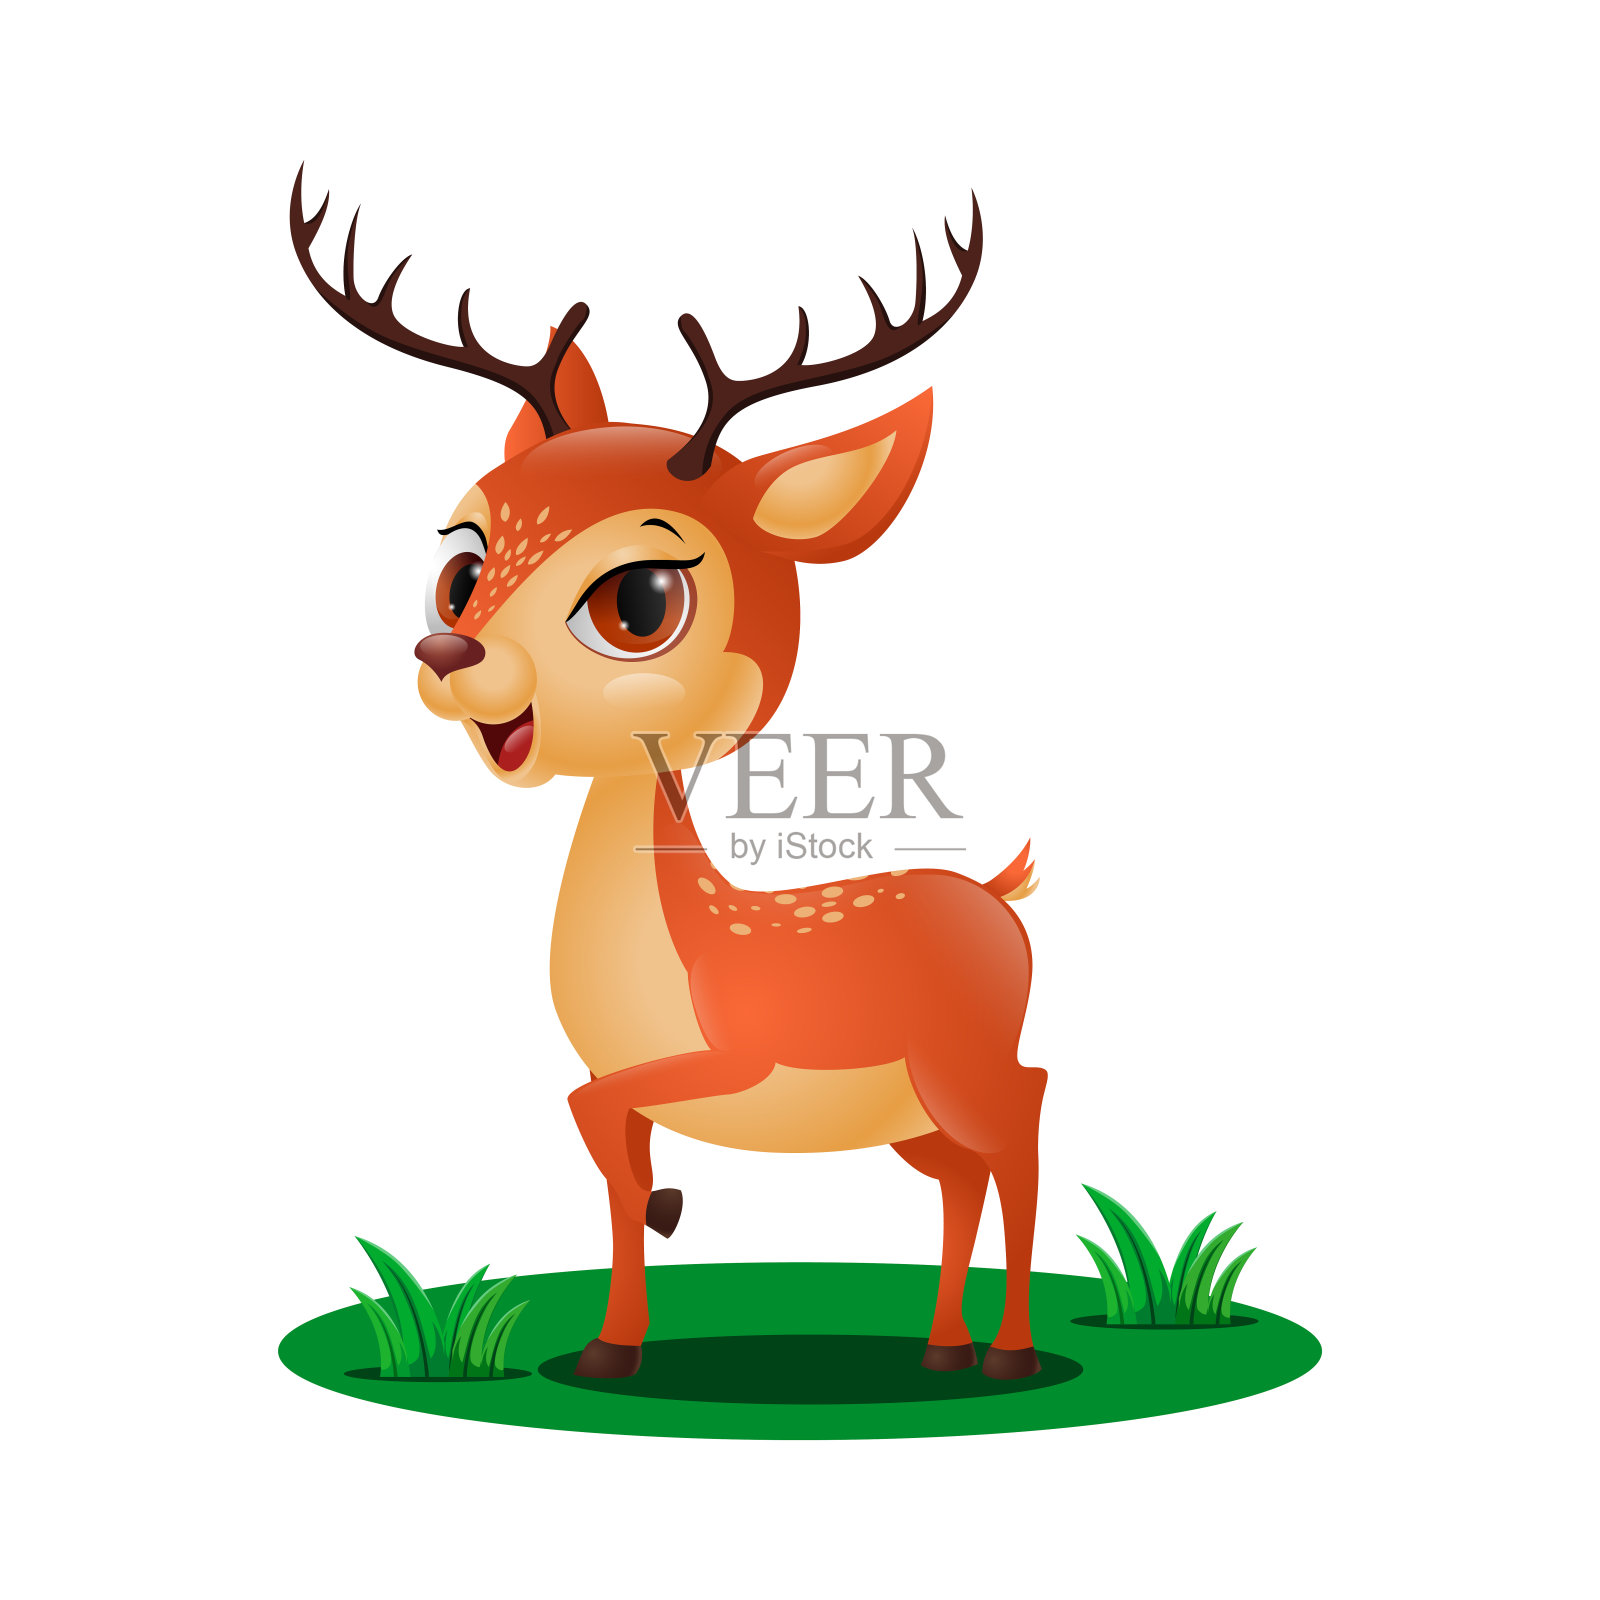 草丛里可爱的小鹿插画图片素材